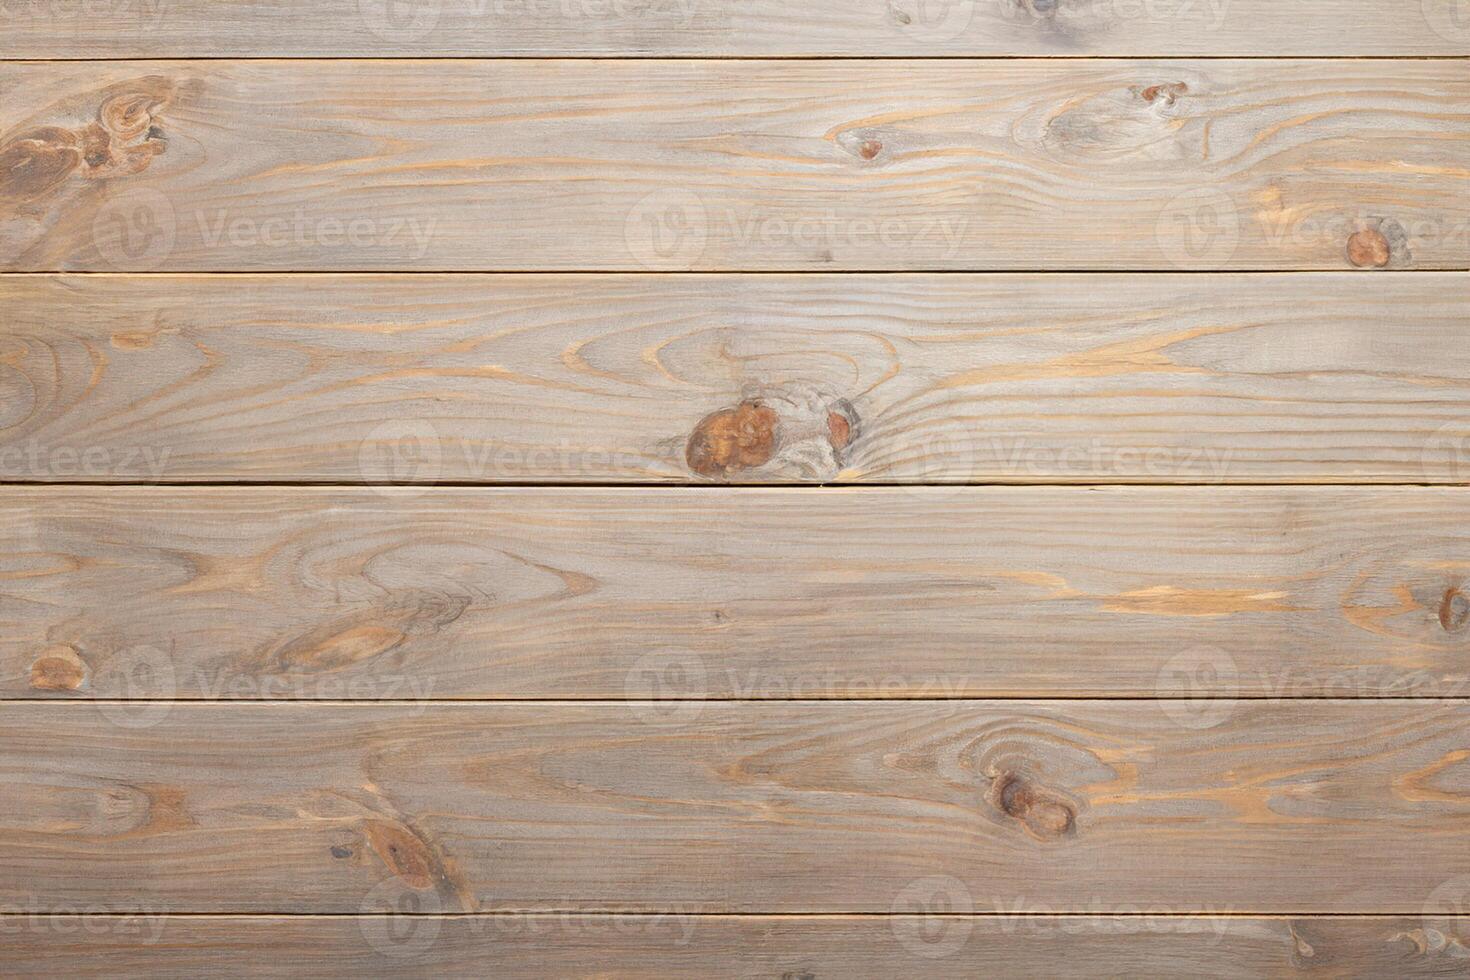 tissu serviette de table sur à rustique en bois table Contexte photo